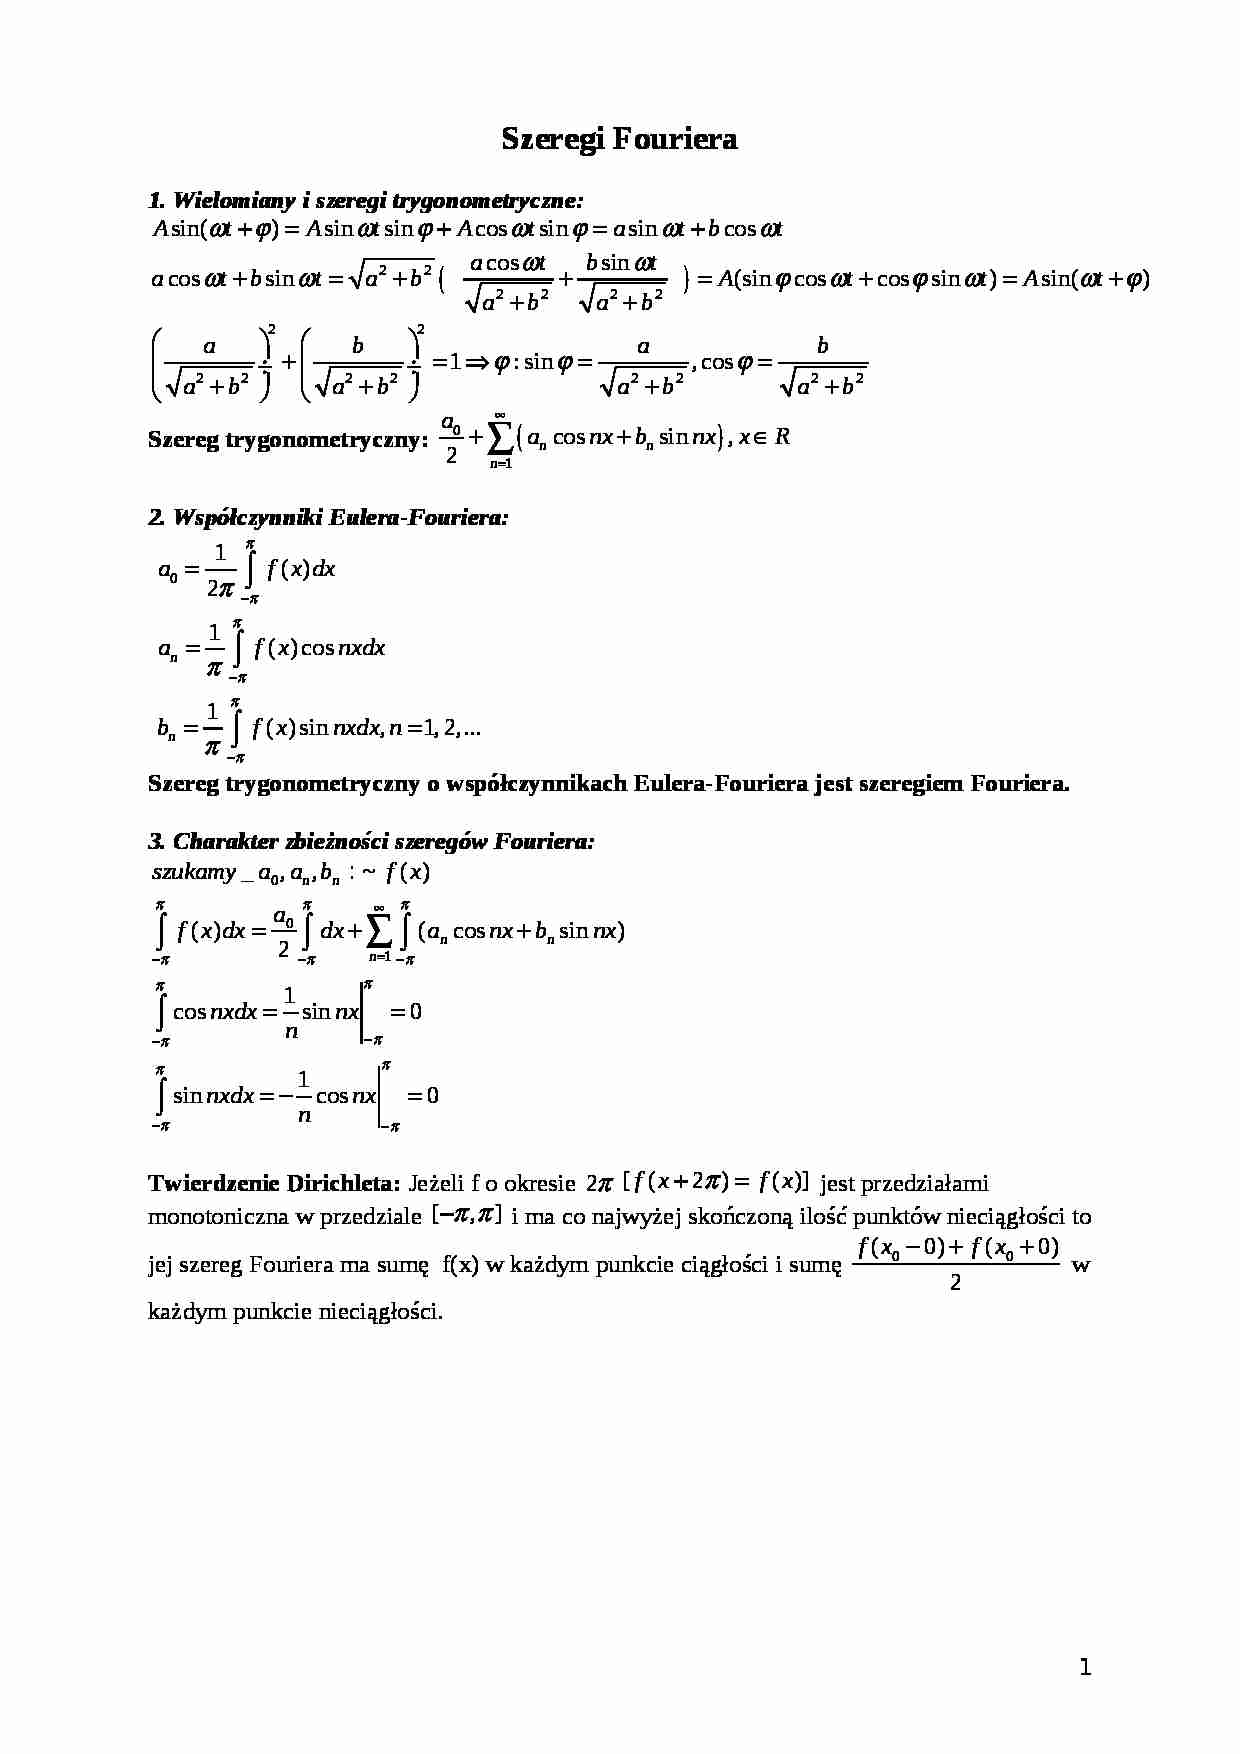 Szeregi Fouriera - strona 1